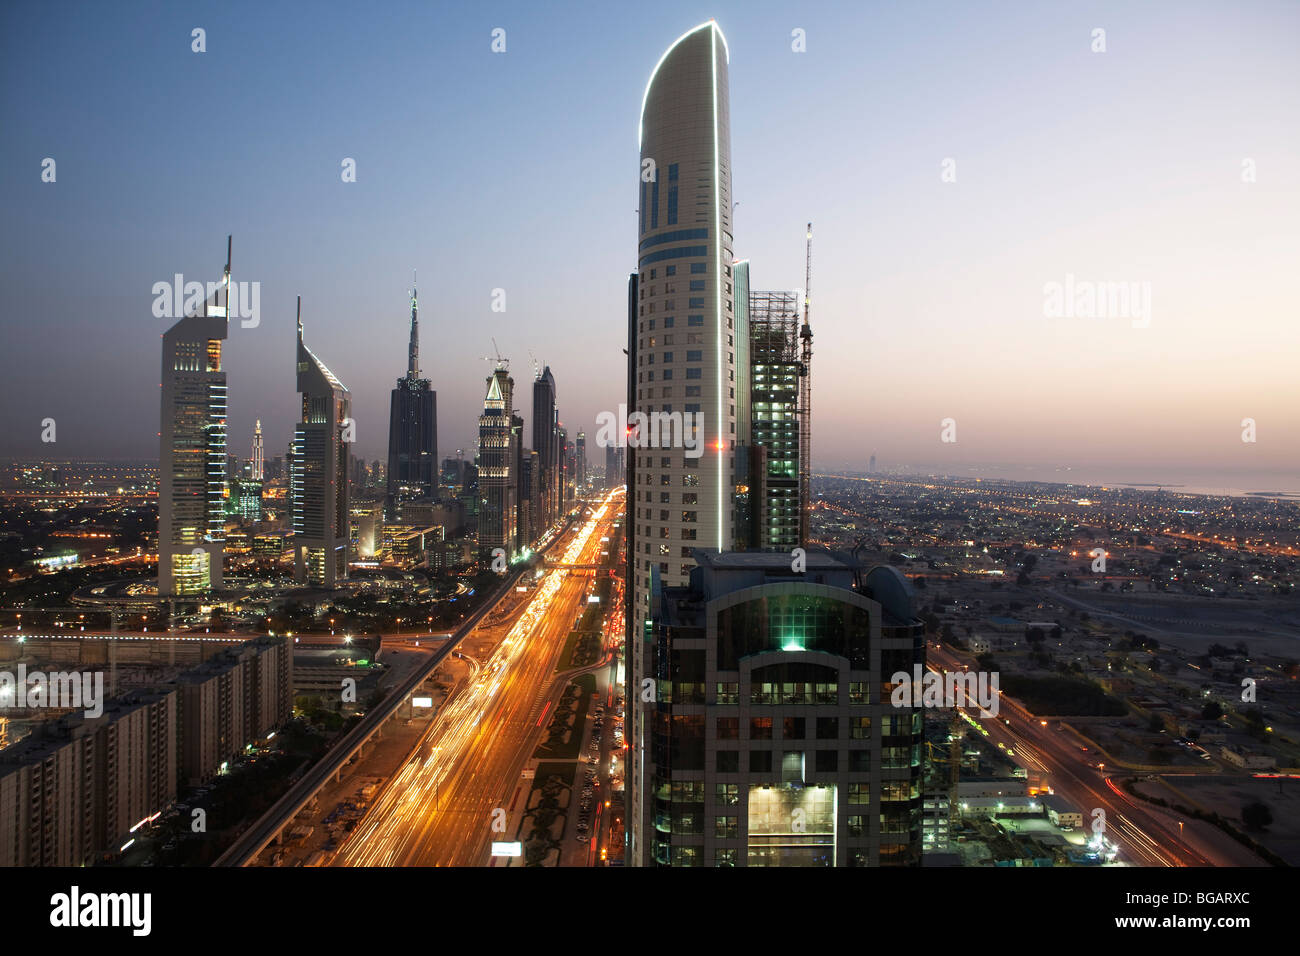 Sheikh Zayed Road at dusk, Dubai, United Arabian Emirates Stock Photo